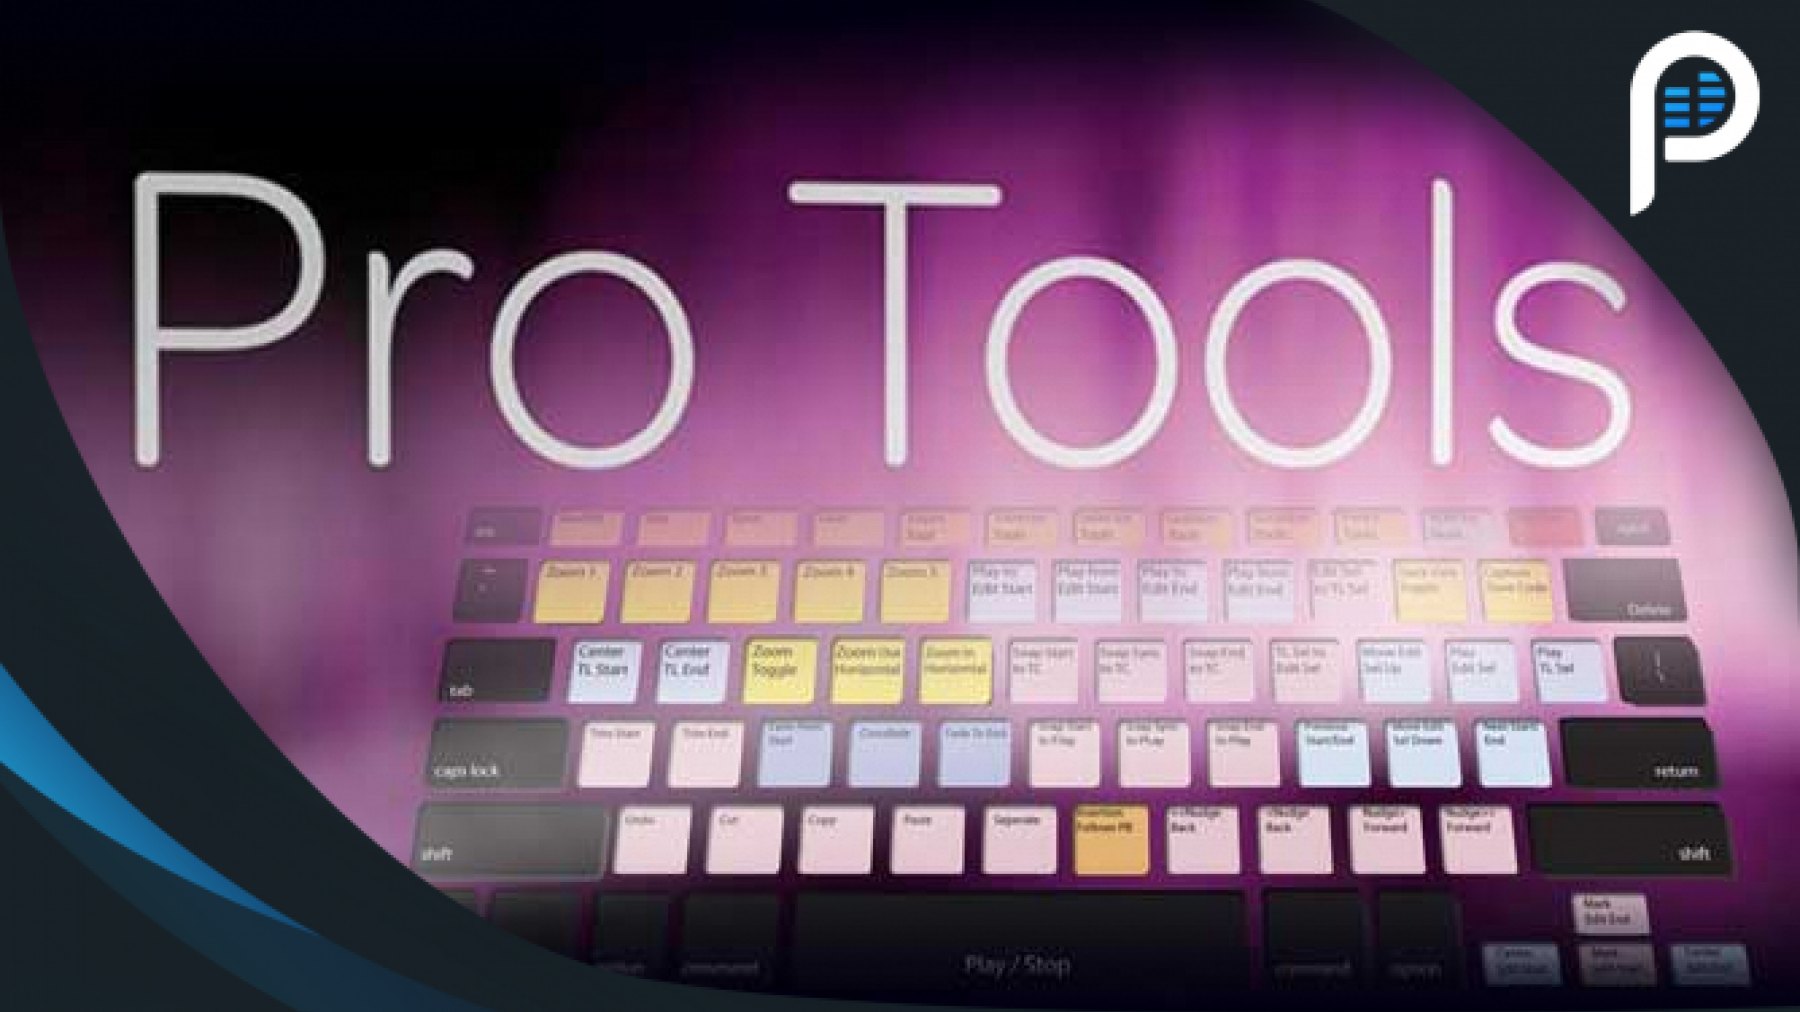 Pro tools 12 for mac torrent